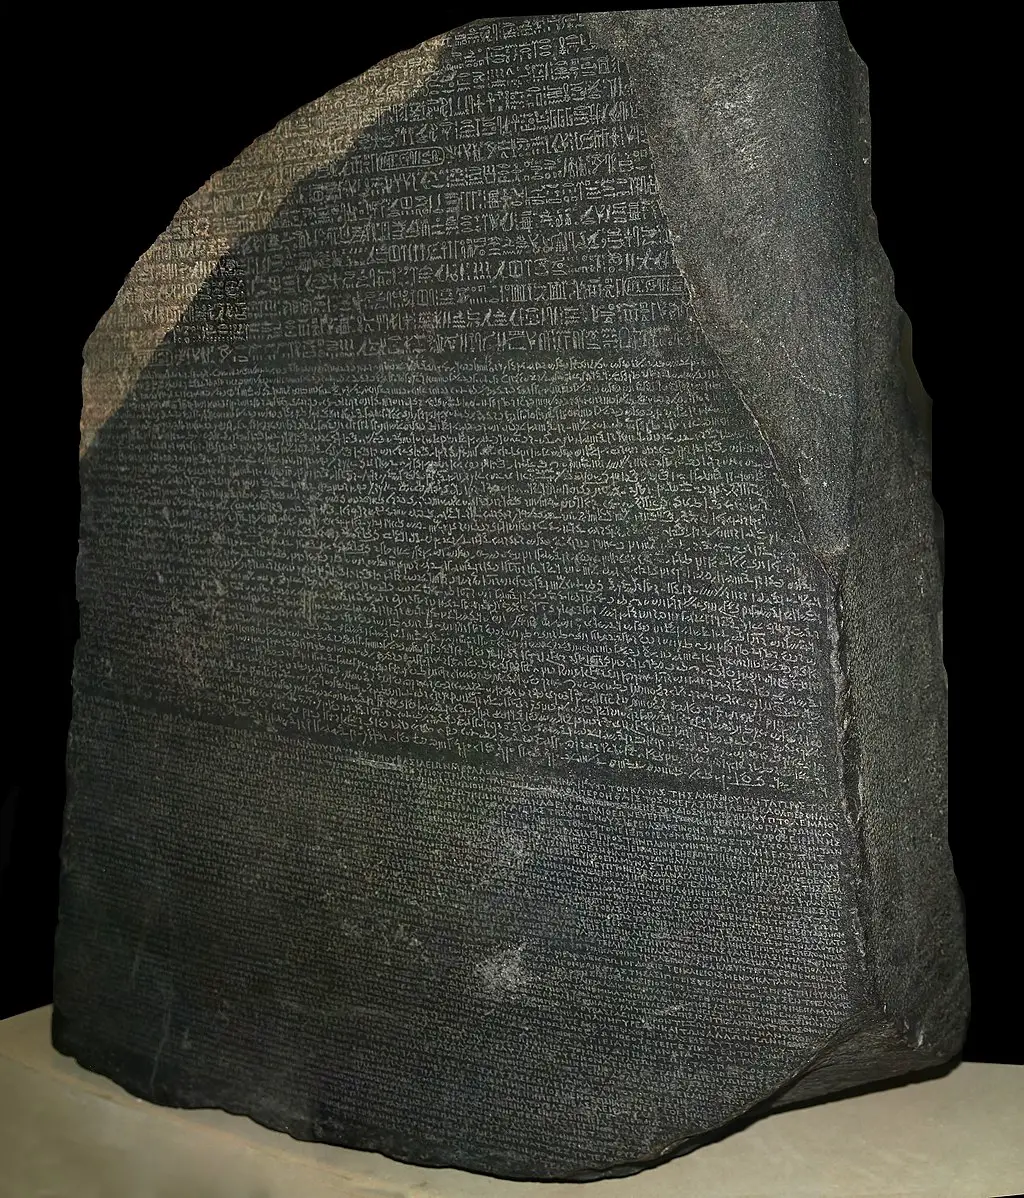 10 curiosidades sobre la Piedra Rosetta, el artefacto que permitió descifrar los jeroglíficos